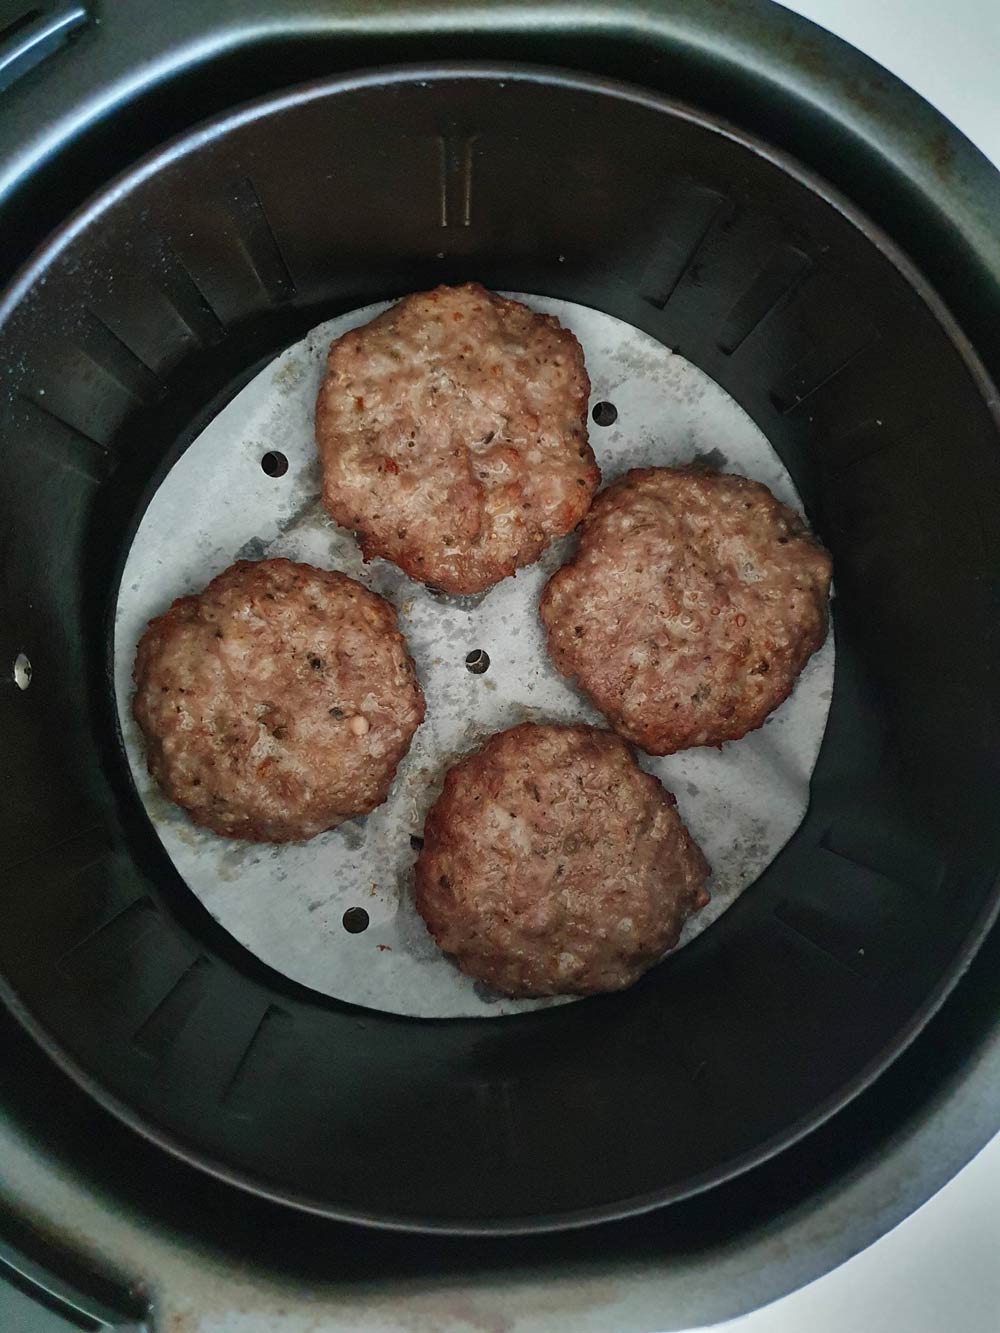 sausage patties in the air fryer basket